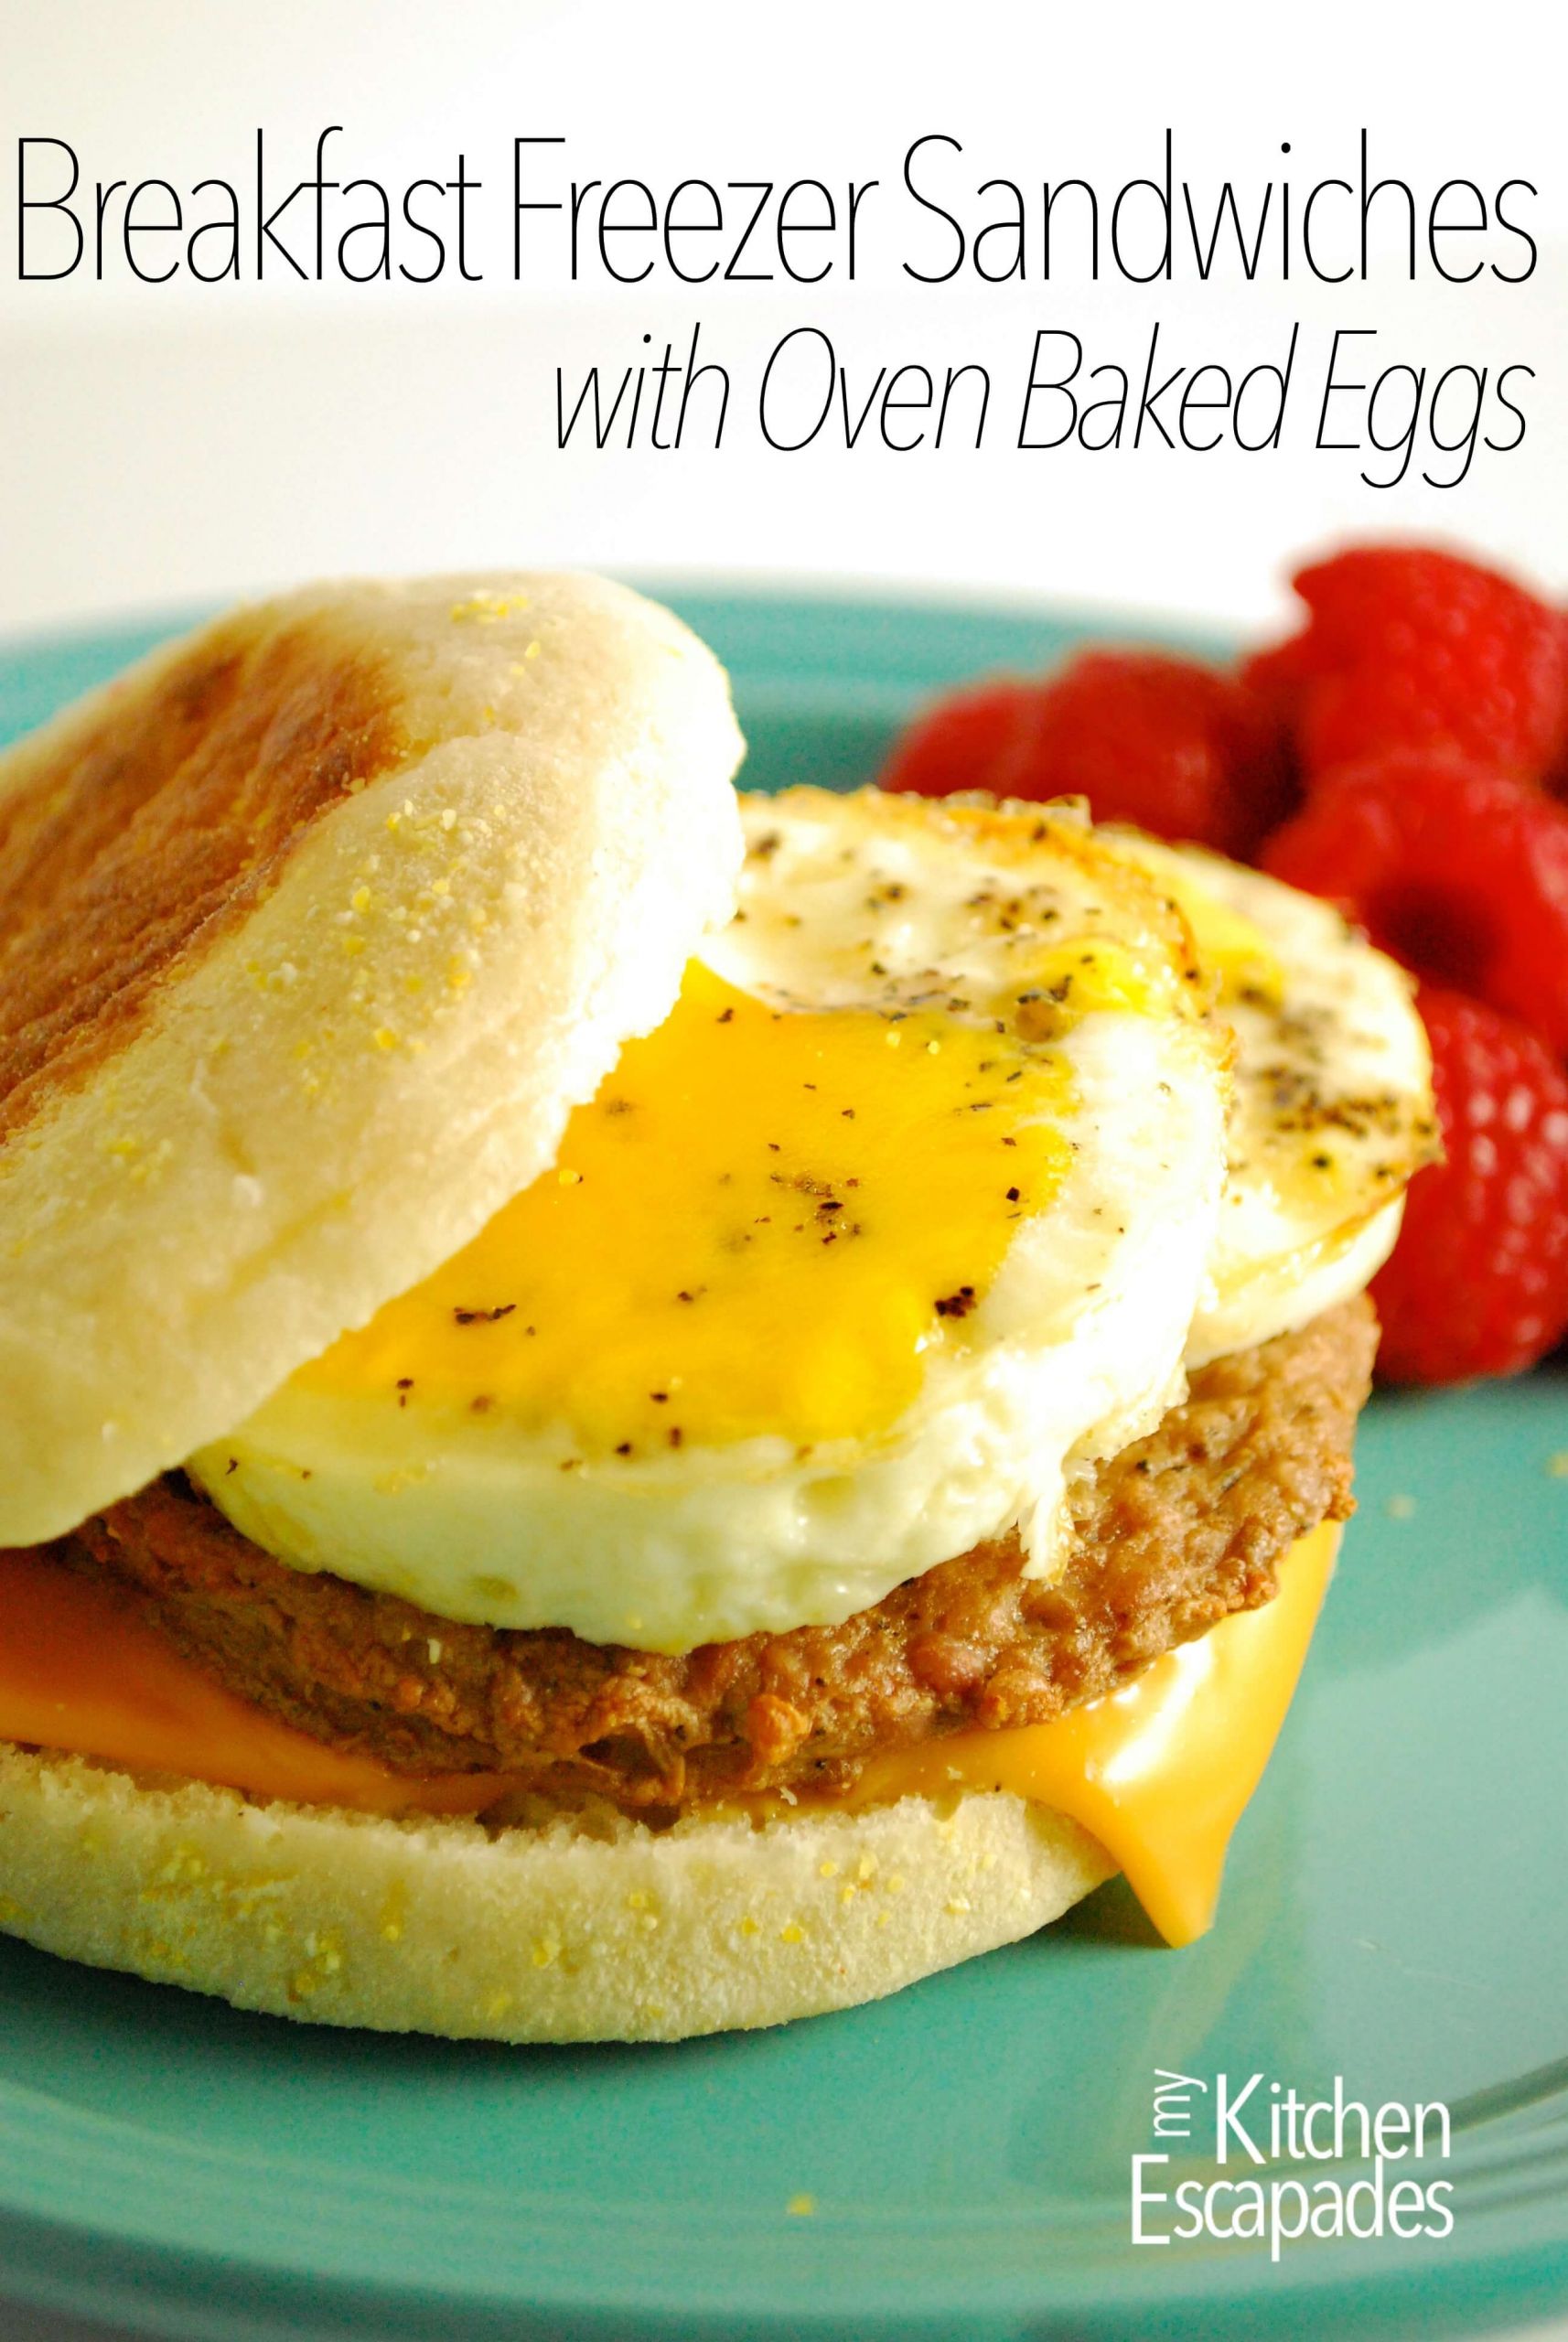 Baked Eggs For Breakfast Sandwiches
 Freezer Breakfast Sandwich with Oven Baked Eggs